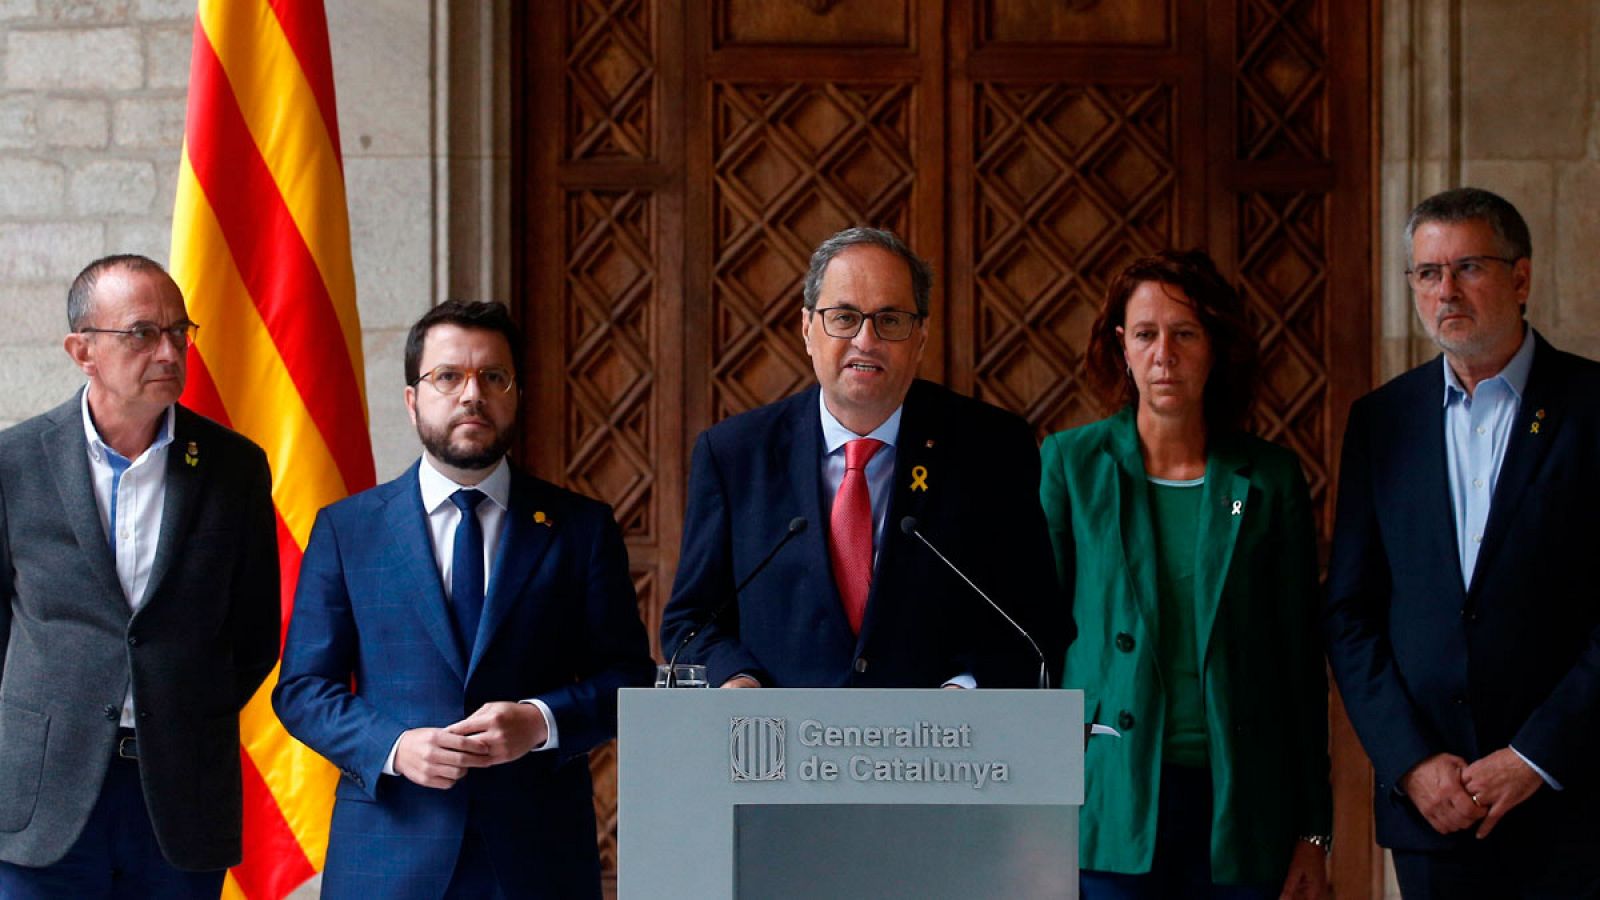 Cataluña | Torra insiste en desvincular la violencia del movimiento independentista y exige a Sánchez una reunión inmediata  - RTVE.es